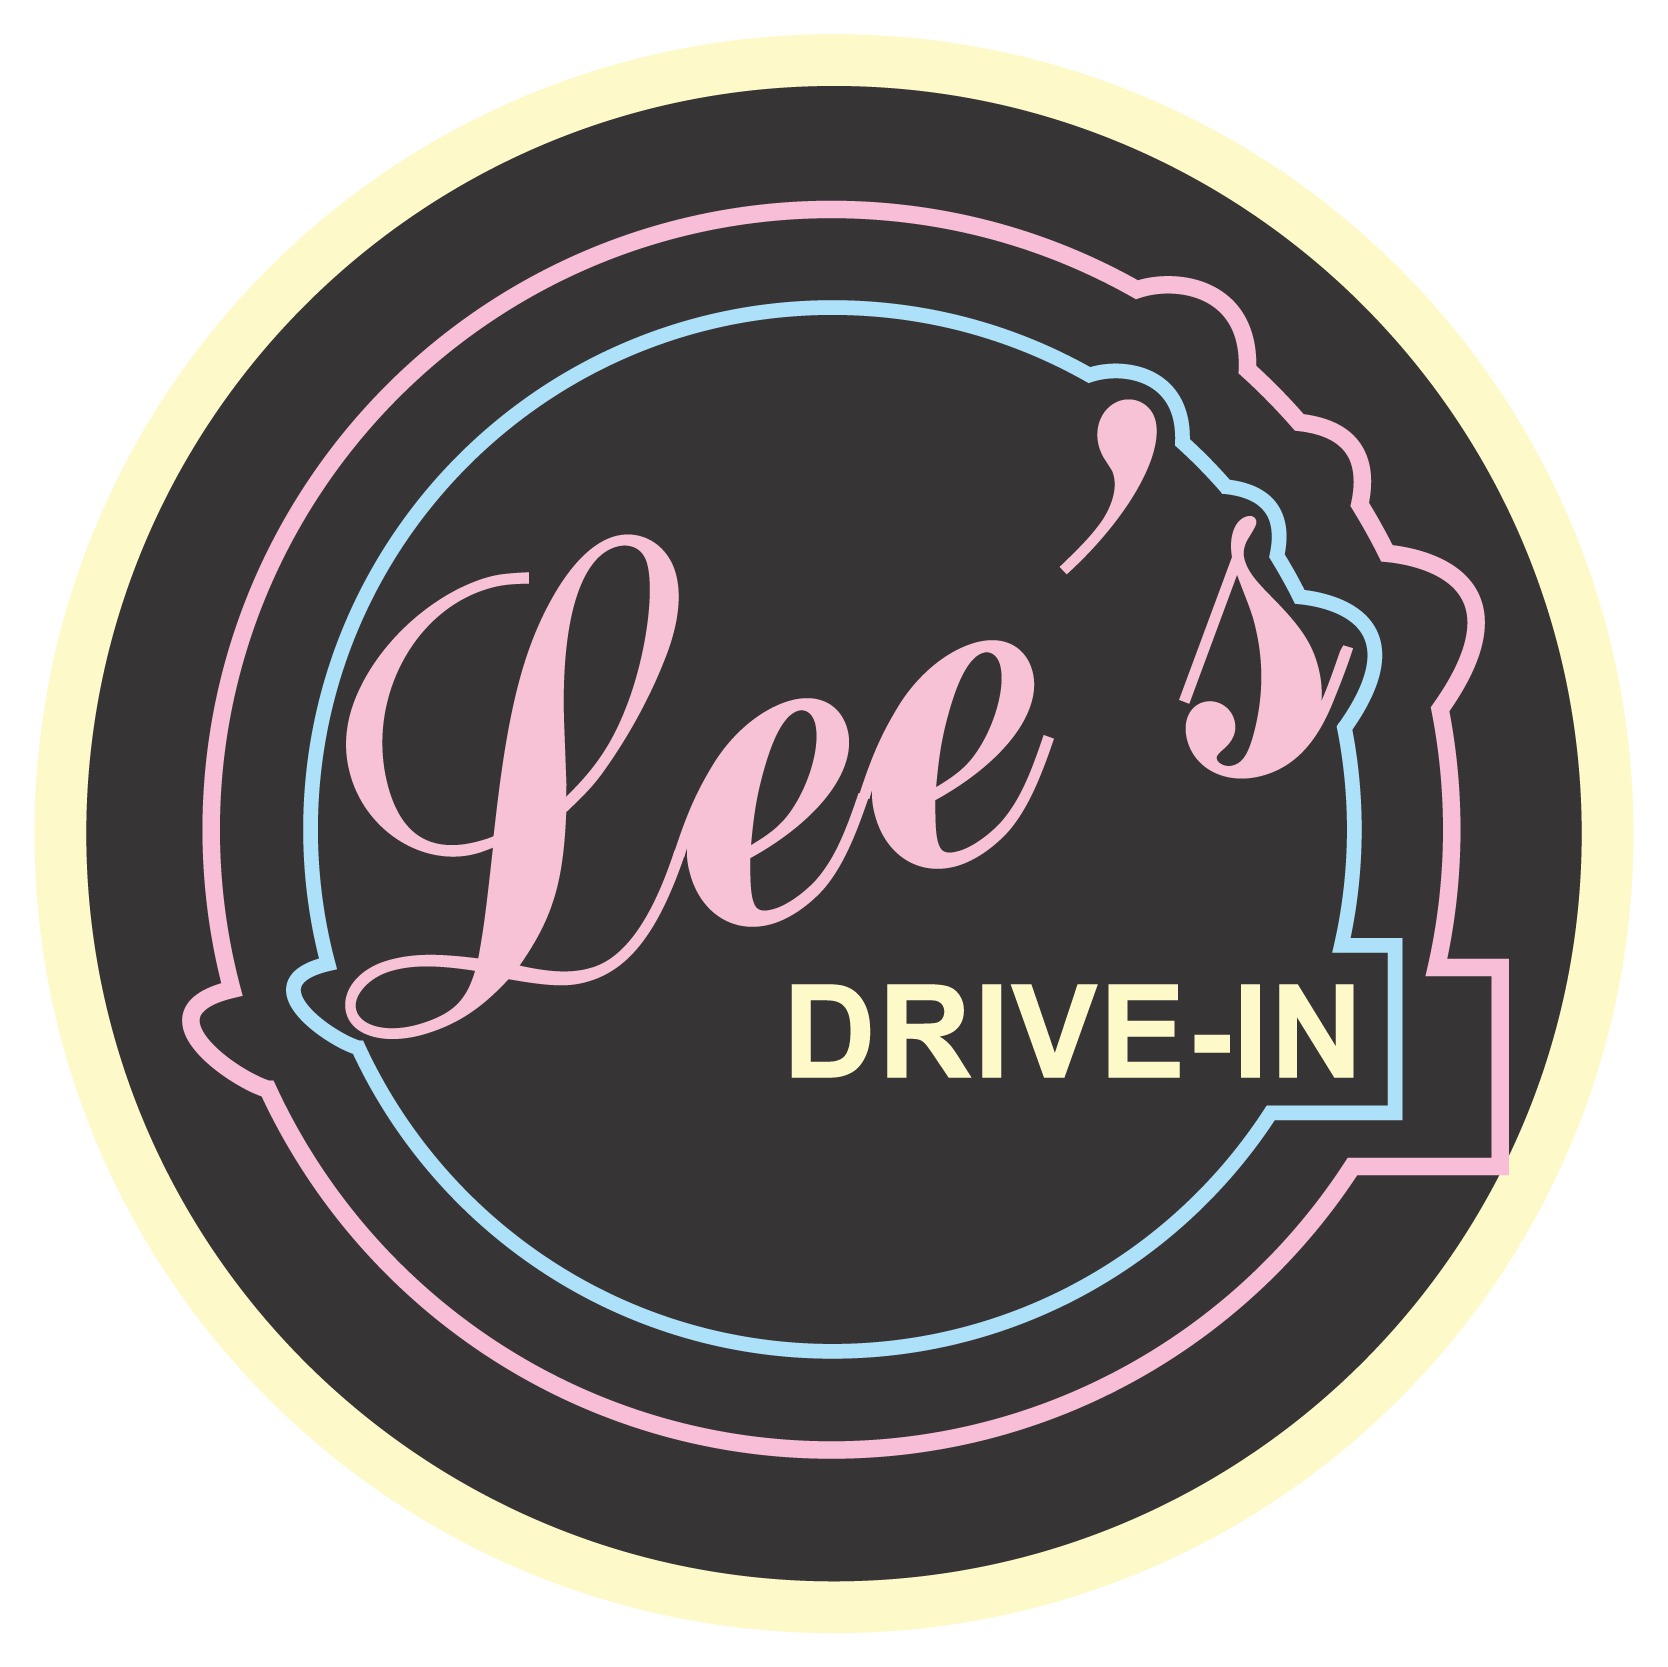 Lee's Menu — Lee's Drive-In | Diner in Downtown Hammond, LA